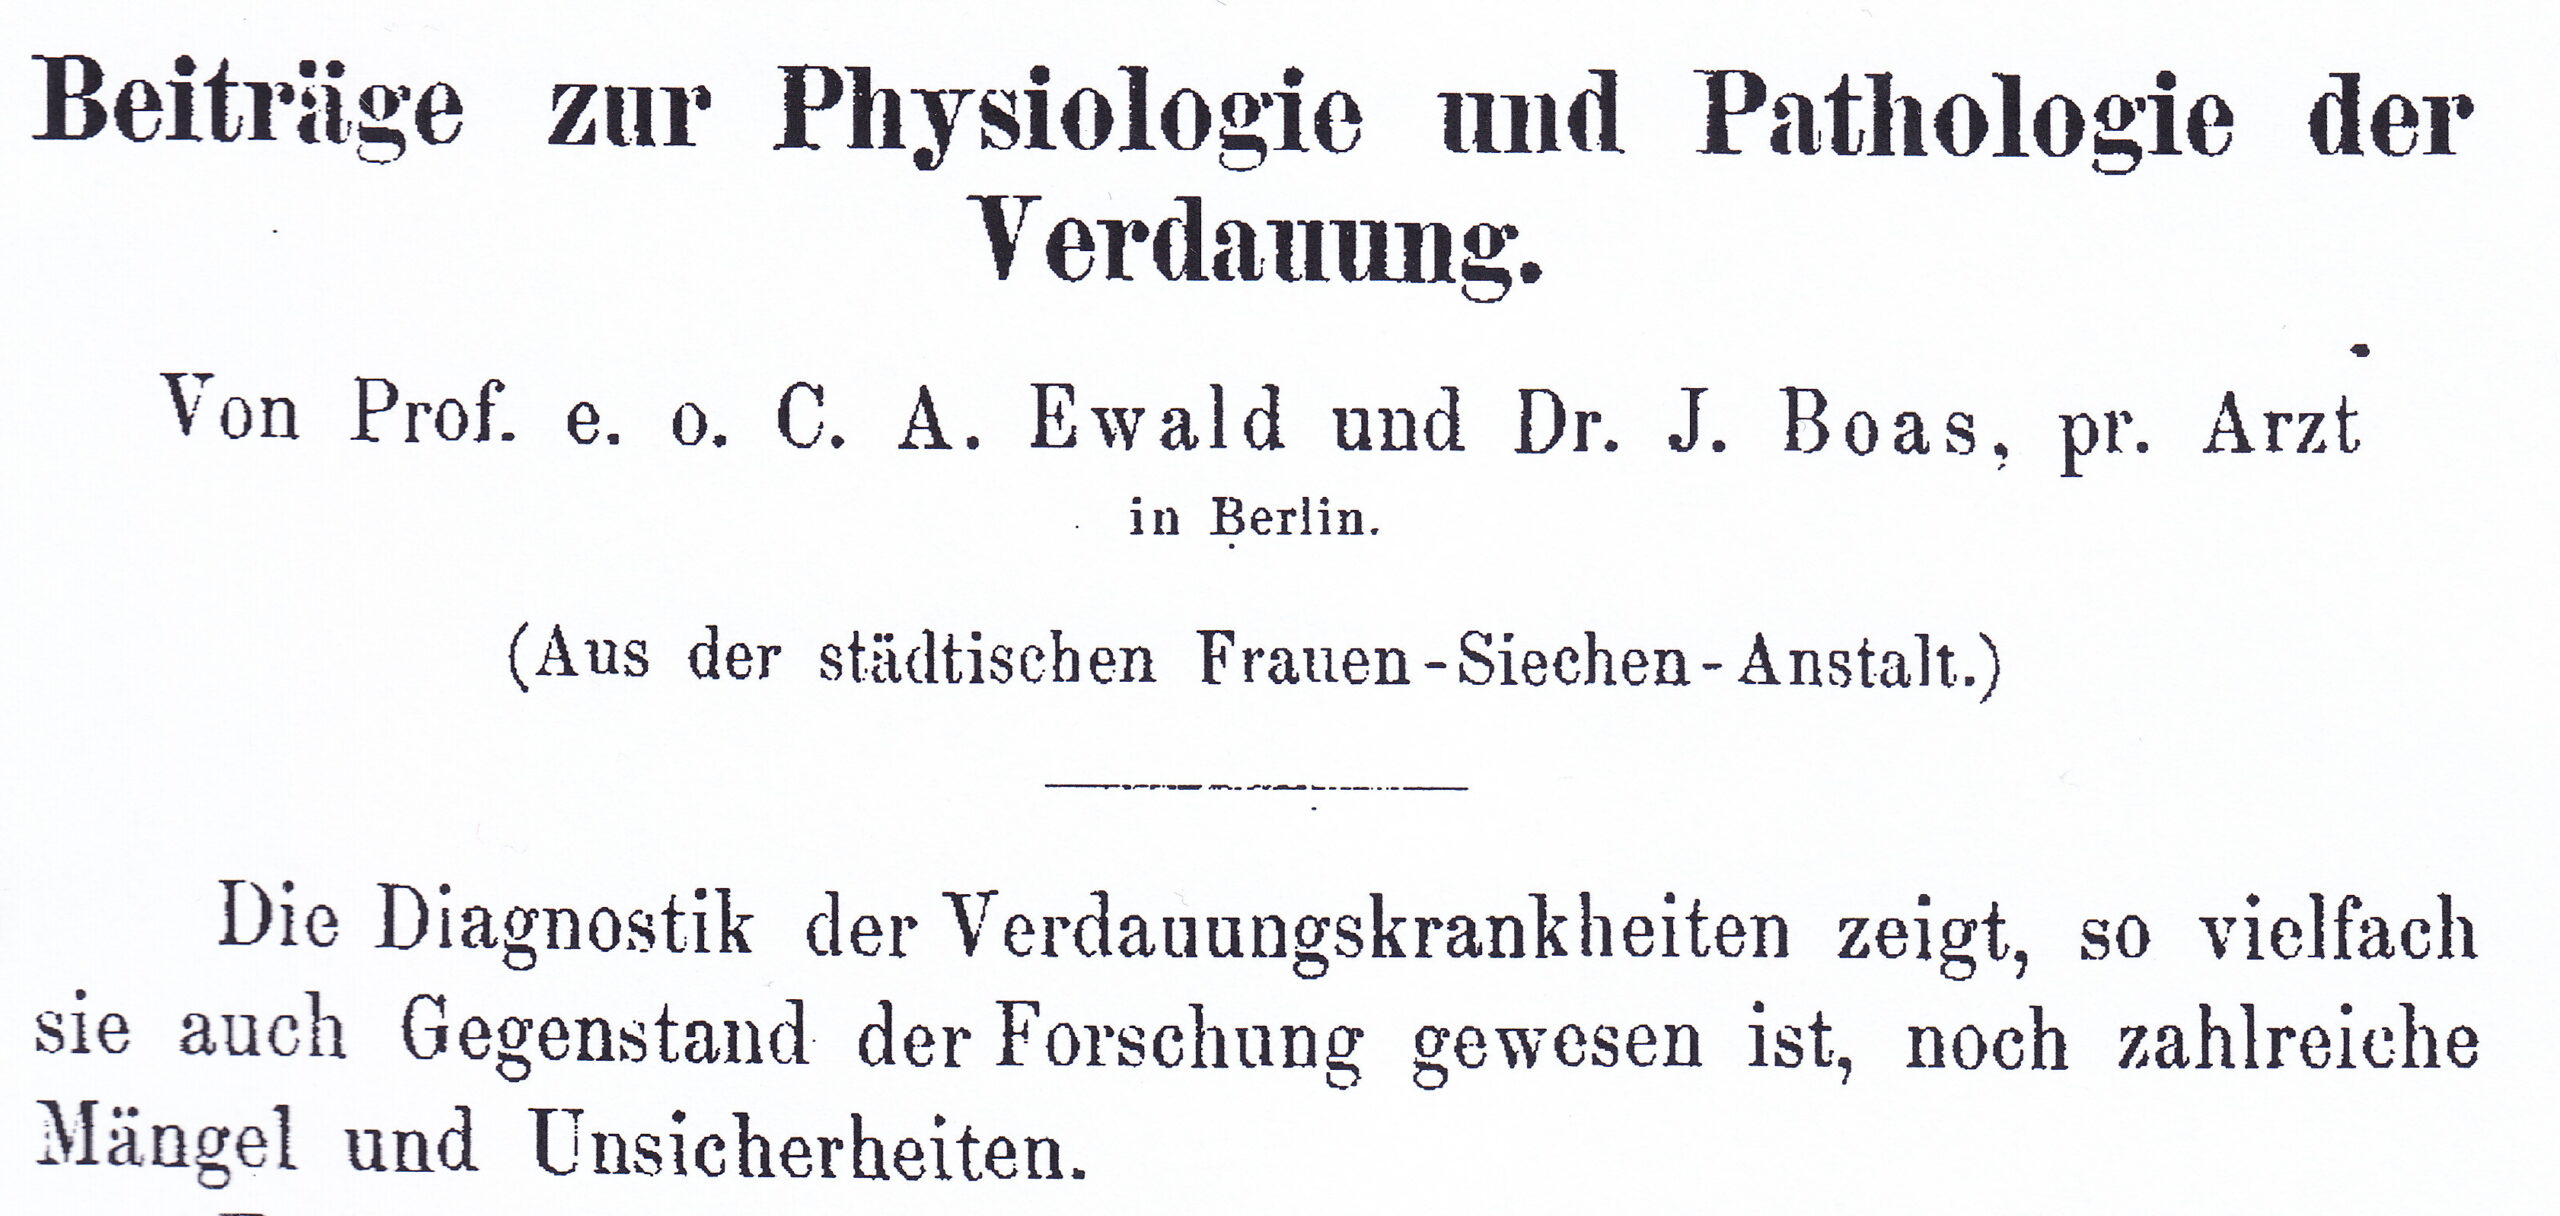 Archiv für Pathologische Anatomie und Physiologie und Klinische Medizin ( Virchows Archiv ), 1885/86, Archiv H Je